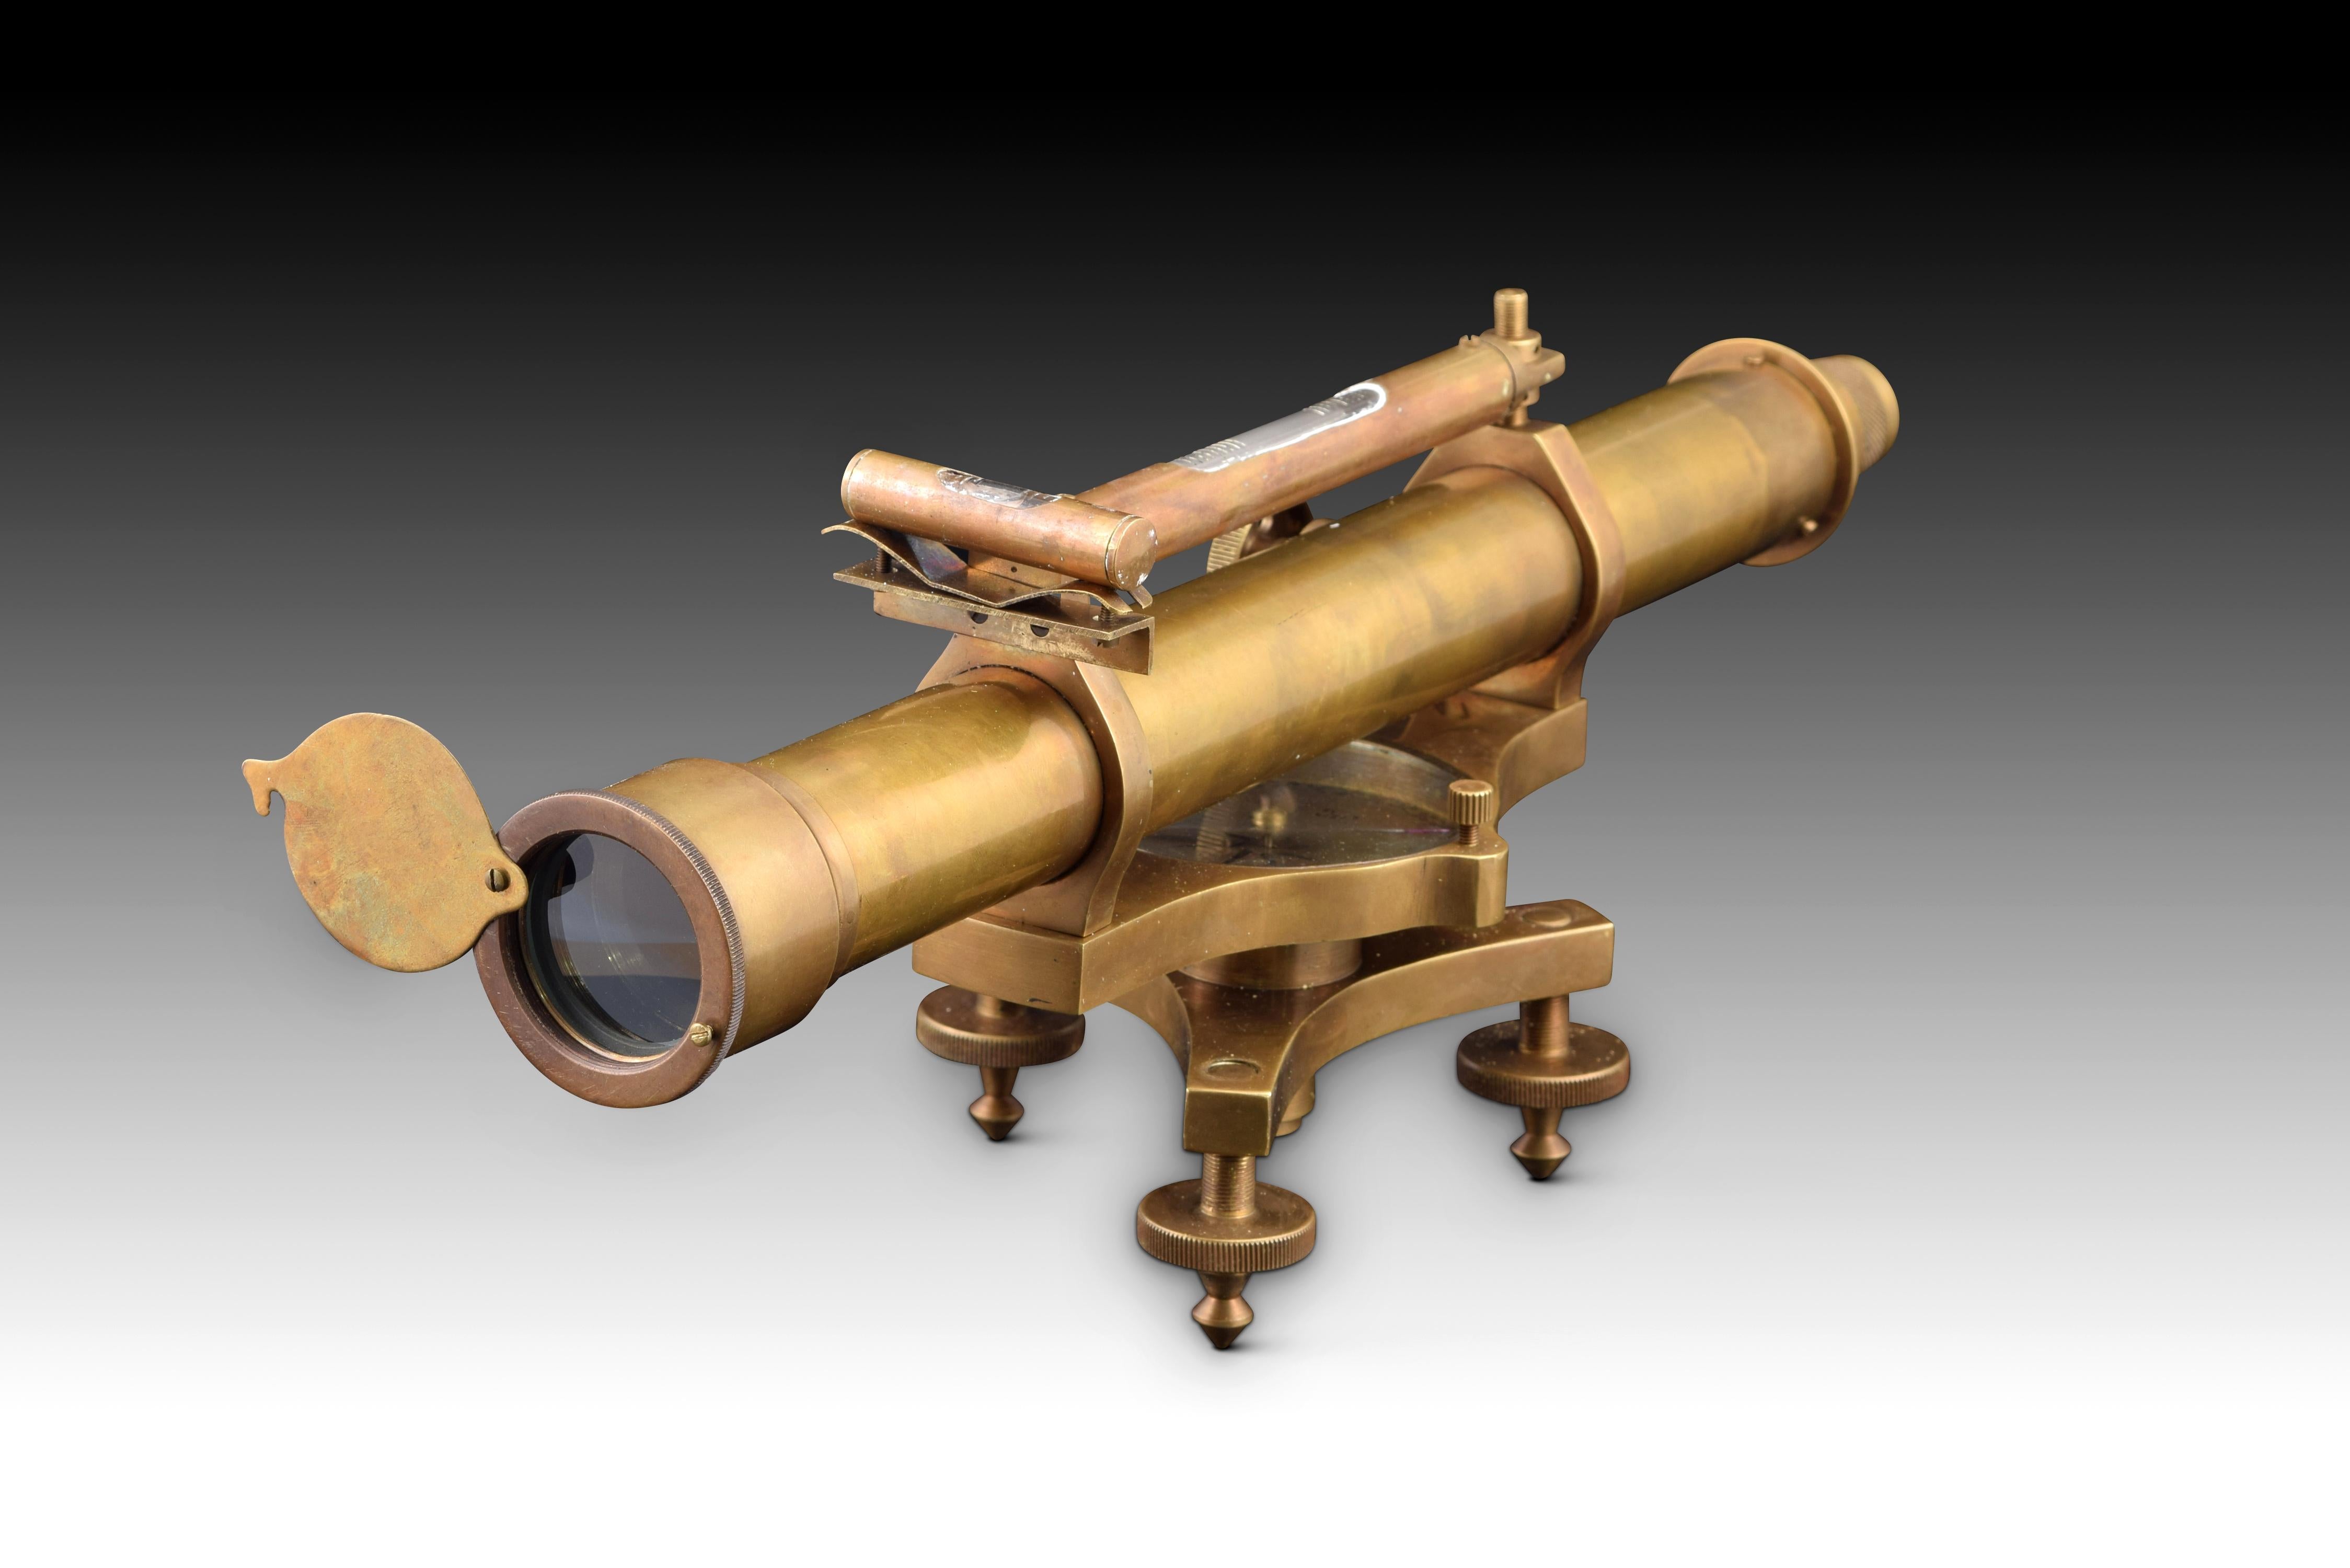 Teleskop mit dekorativer Wasserwaage. Metall. 
Kleines dekoratives Fernrohr mit oberer Wasserwaage und drei verstellbaren Beinen, das auch einen Kompass und eine Wasserwaage enthält.